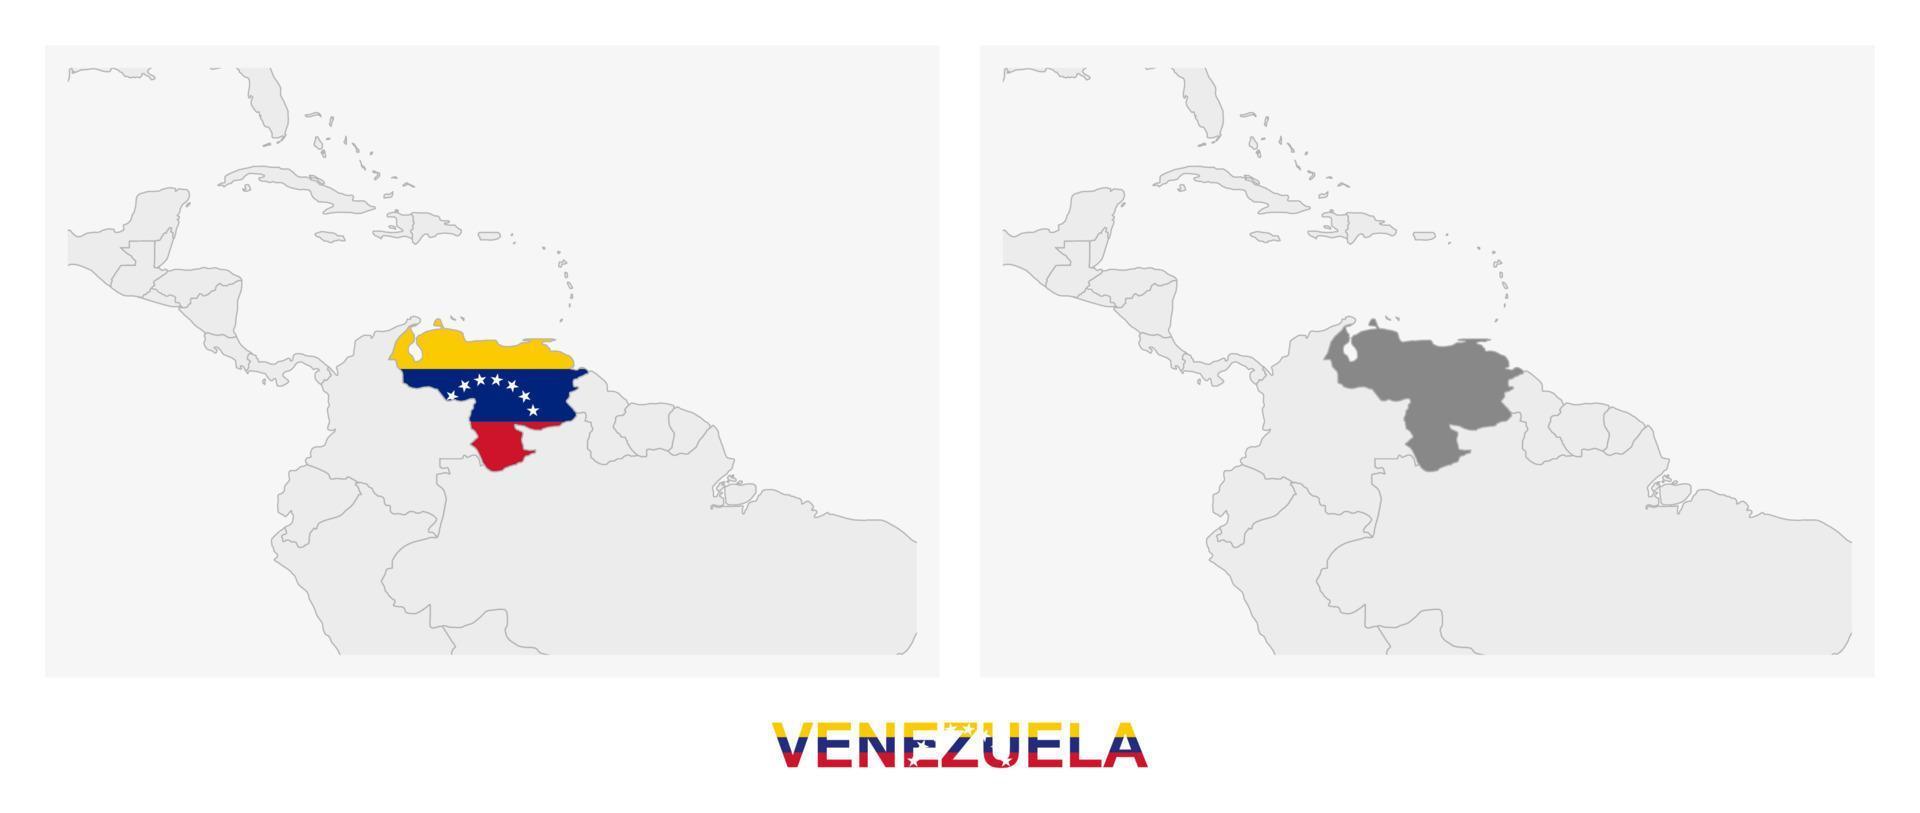 zwei versionen der karte von venezuela, mit der flagge von venezuela und dunkelgrau hervorgehoben. vektor